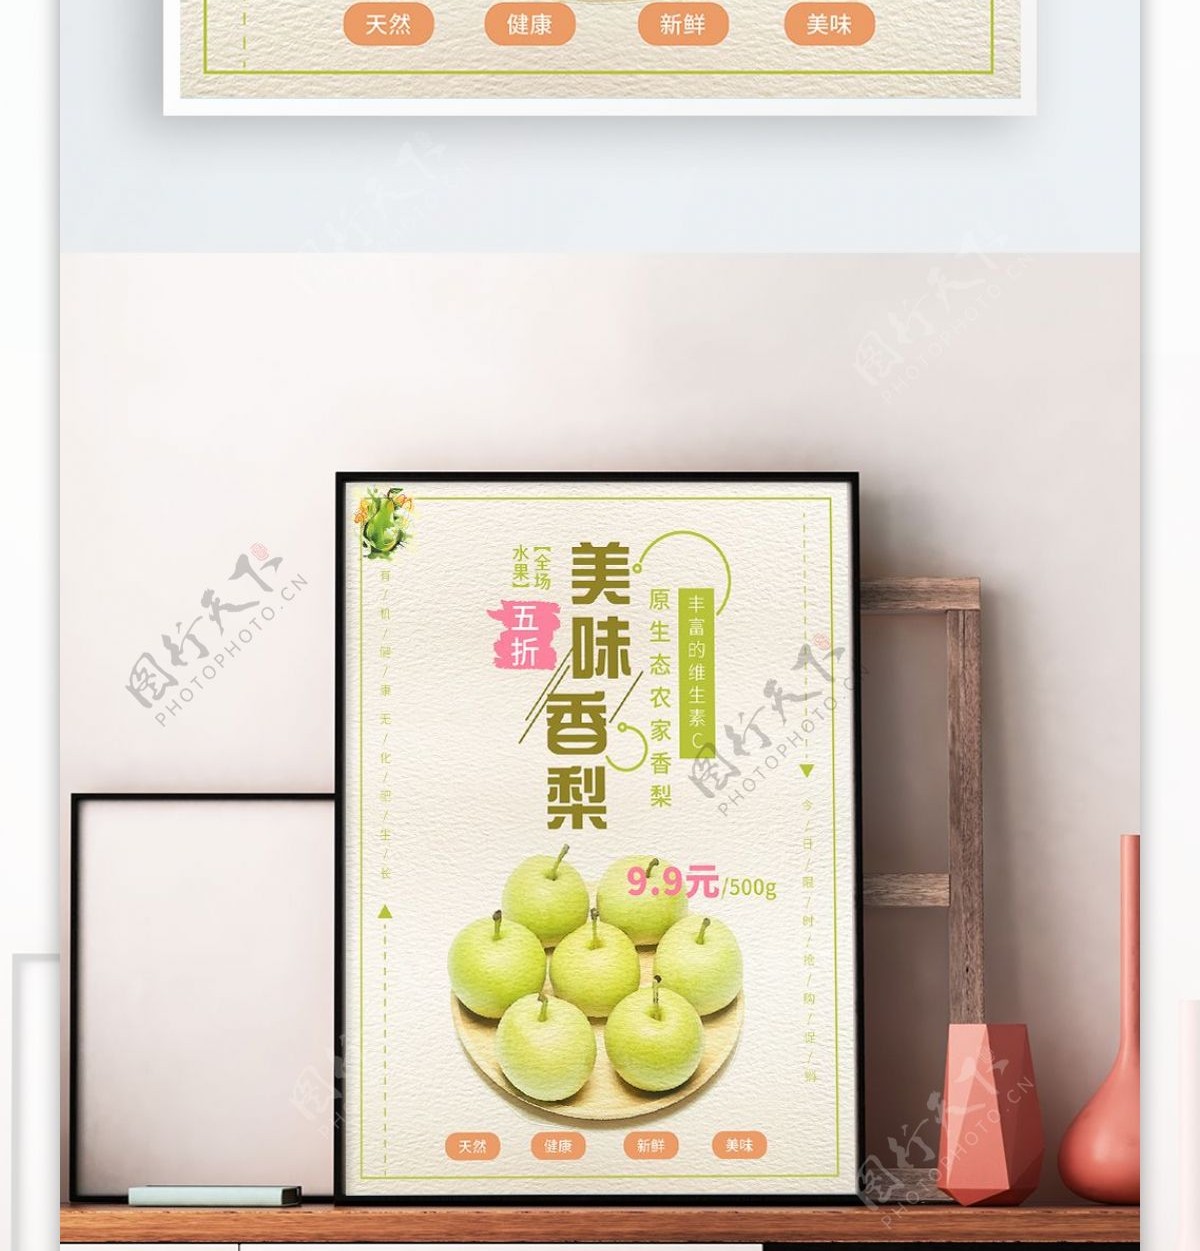 清新绿色水彩新鲜香梨促销海报